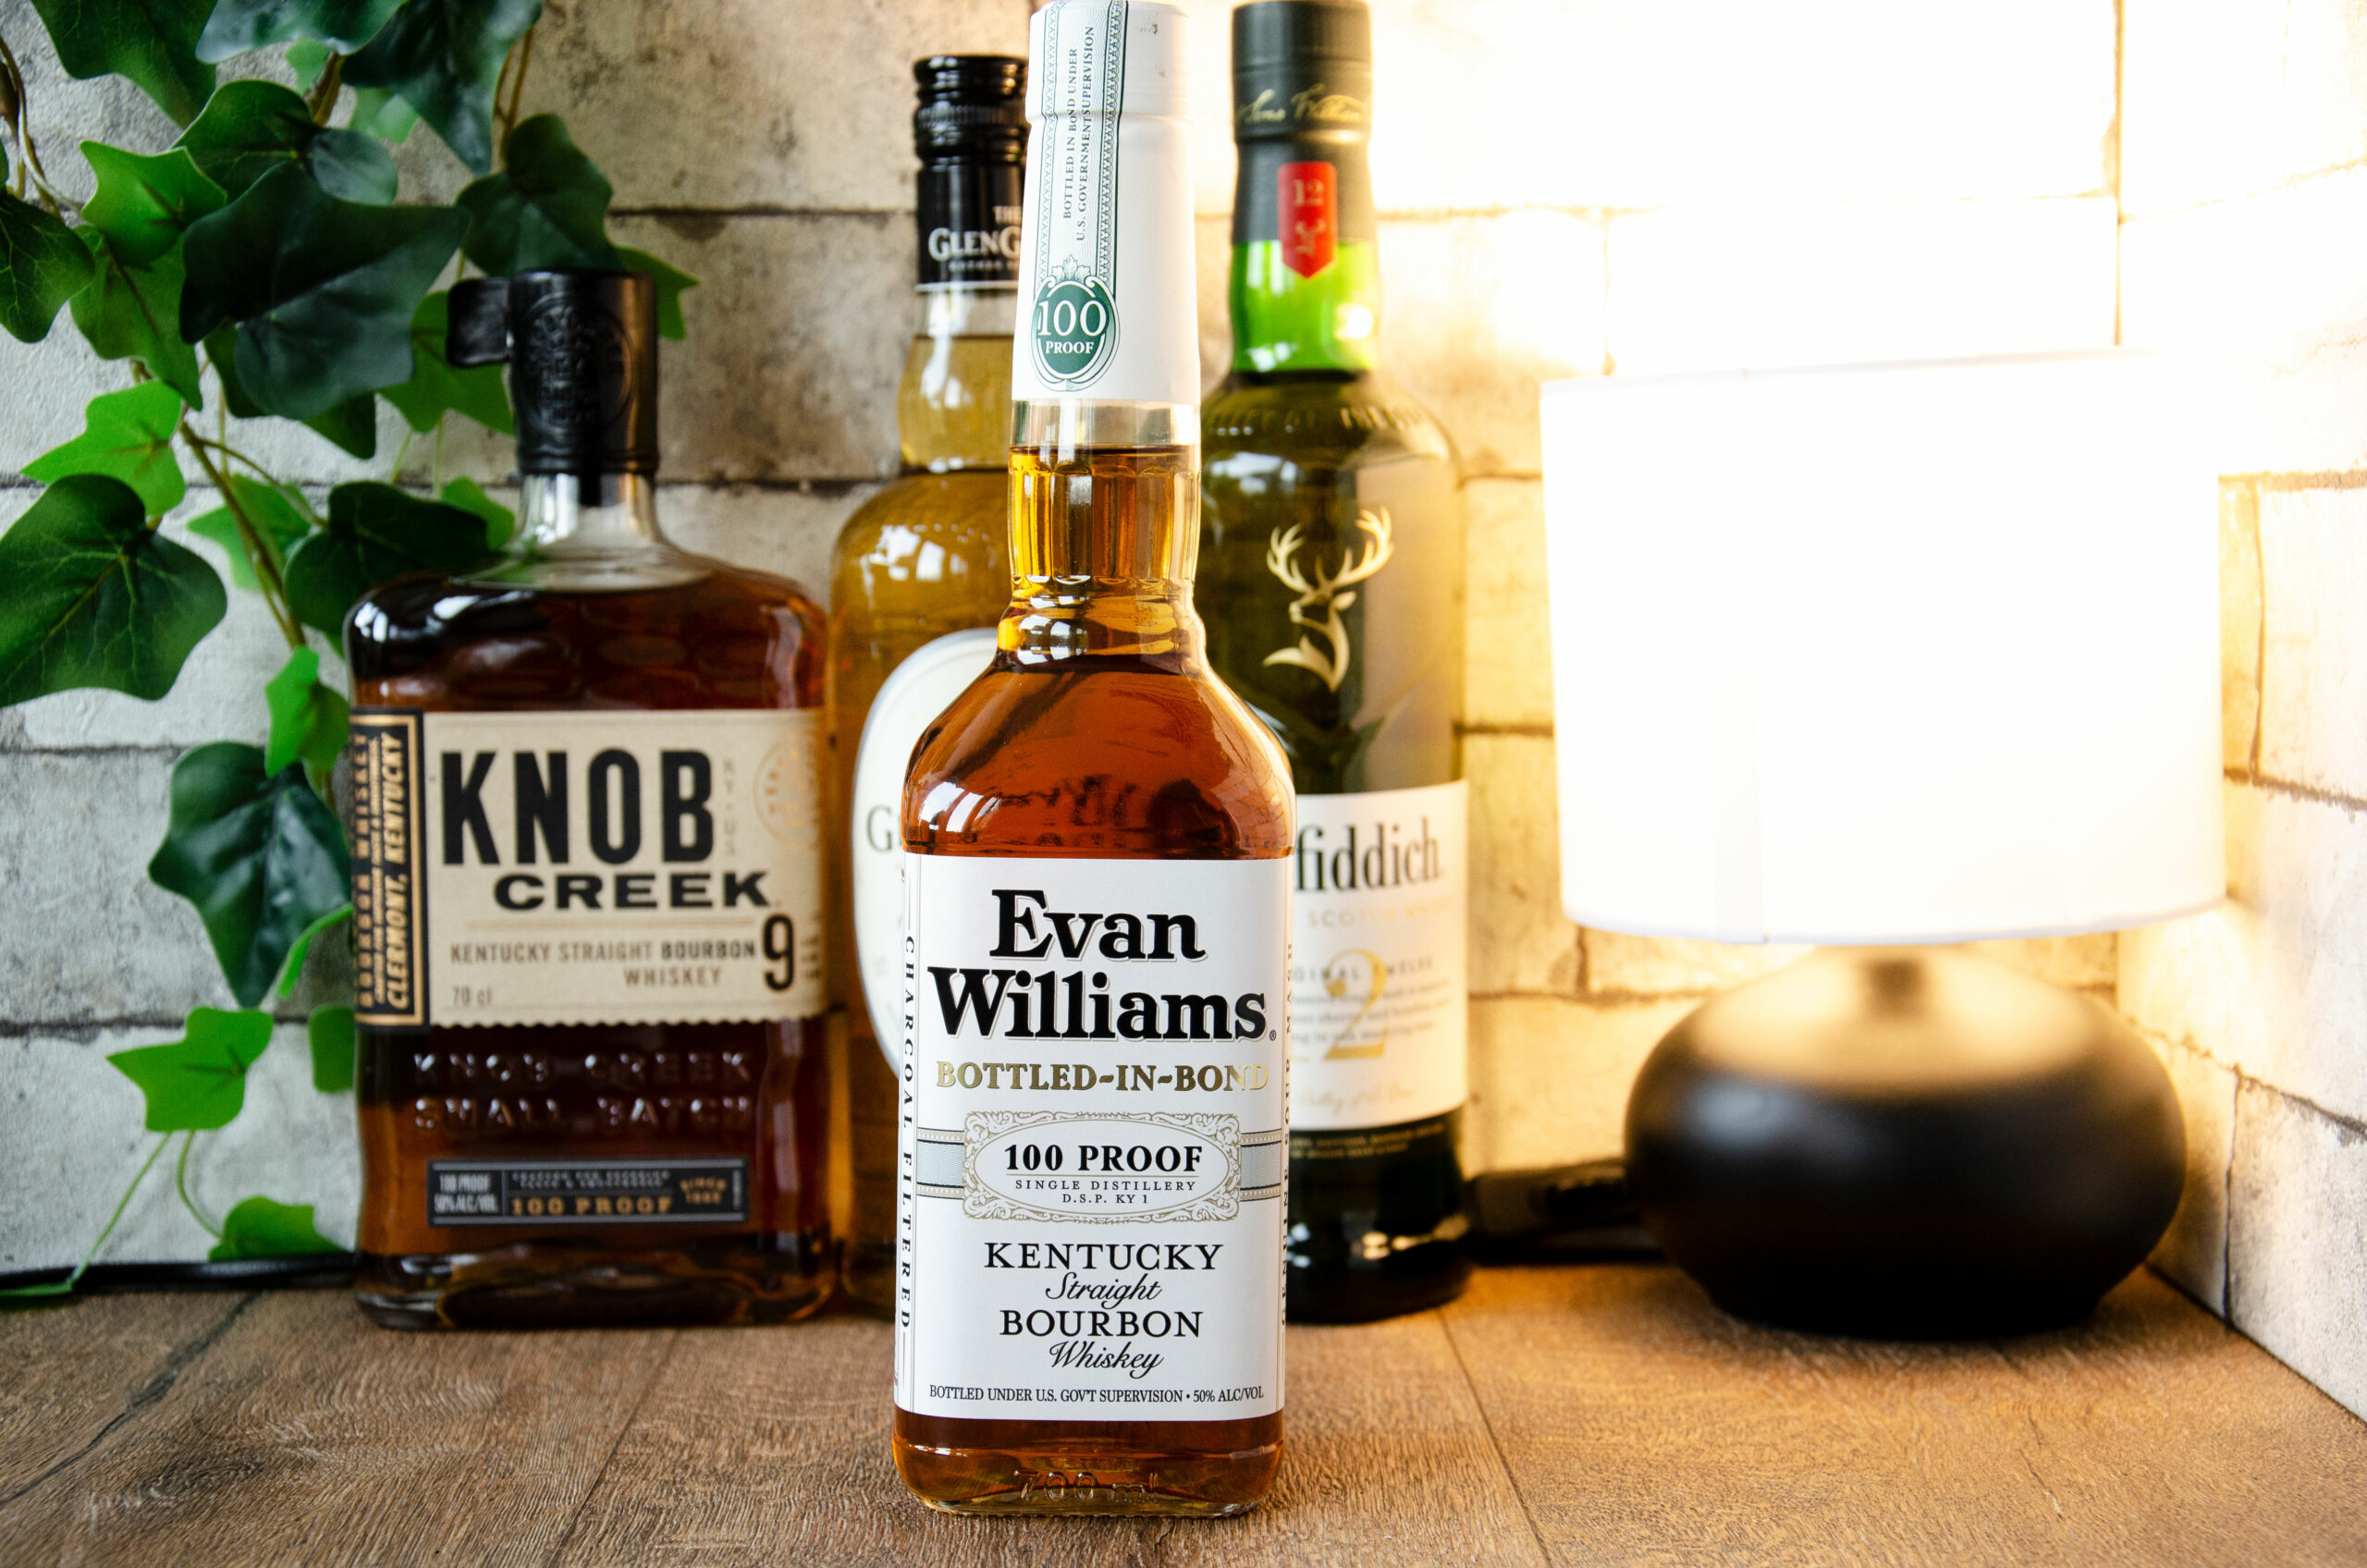 Evan Williams Bottled-in-Bond Kentucky Straight Bourbon Whiskey